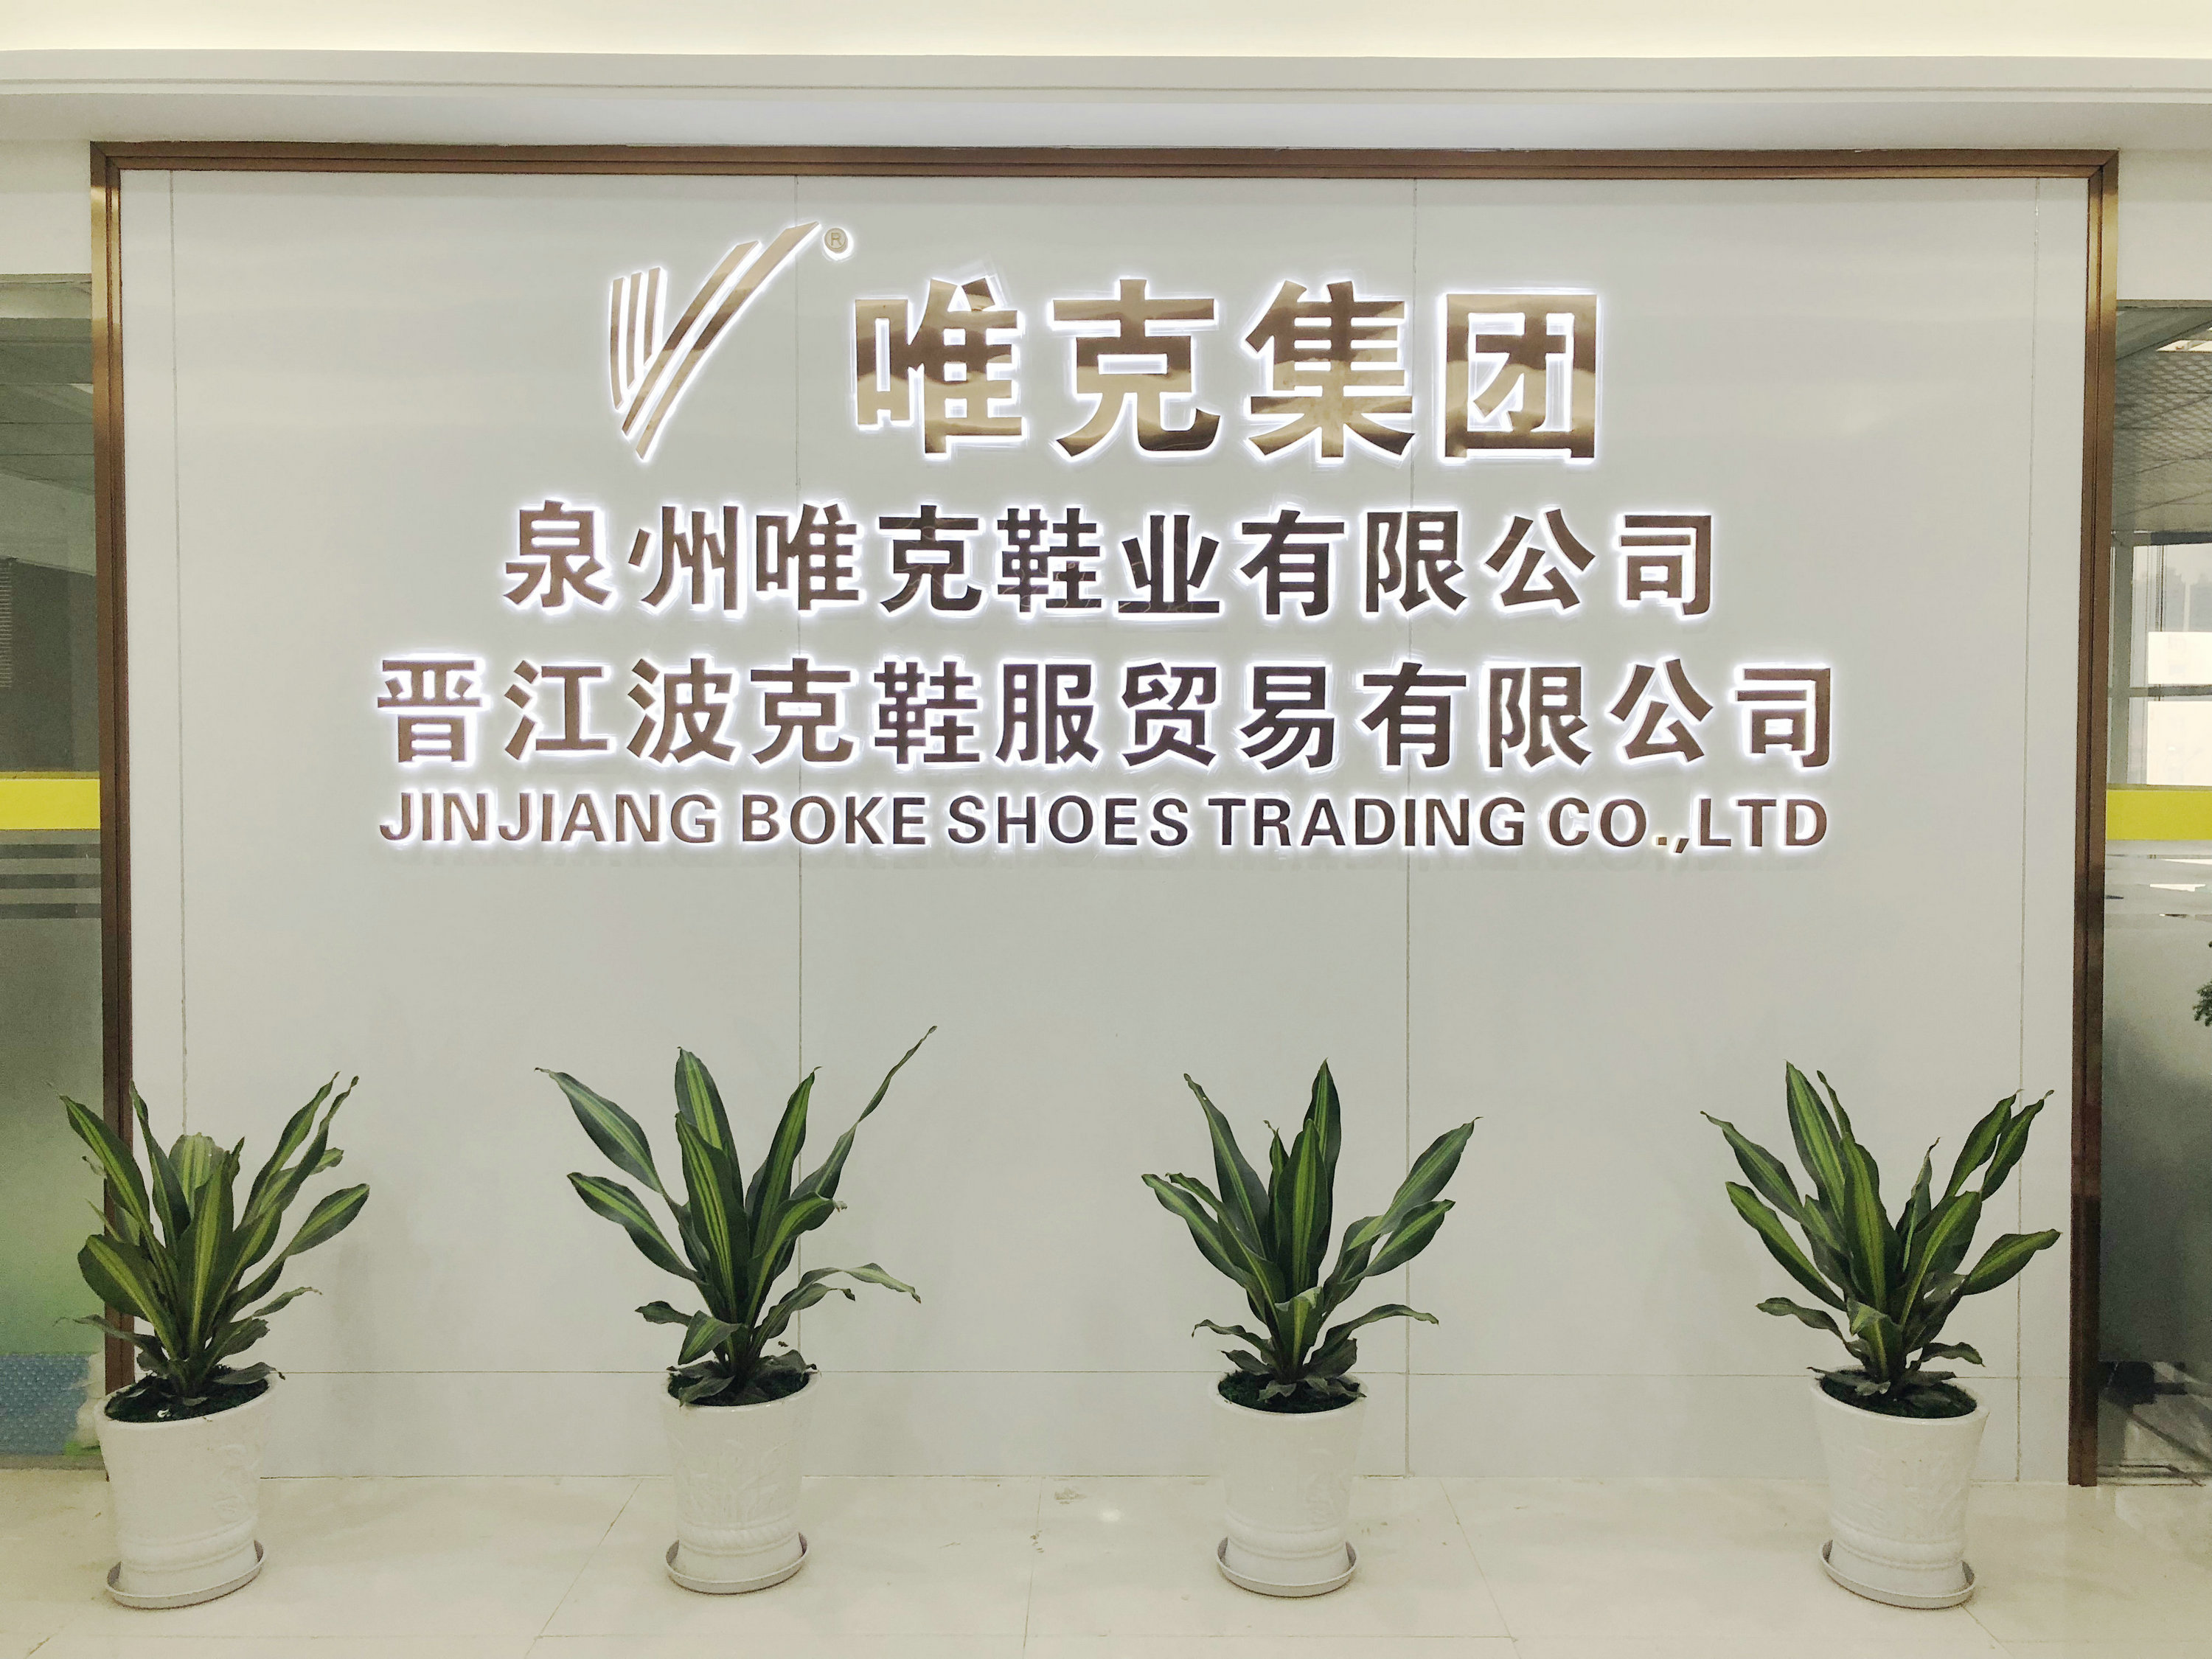 有限公司我司为鞋业出口工贸一体型集团企业,总部位于晋江市双龙路